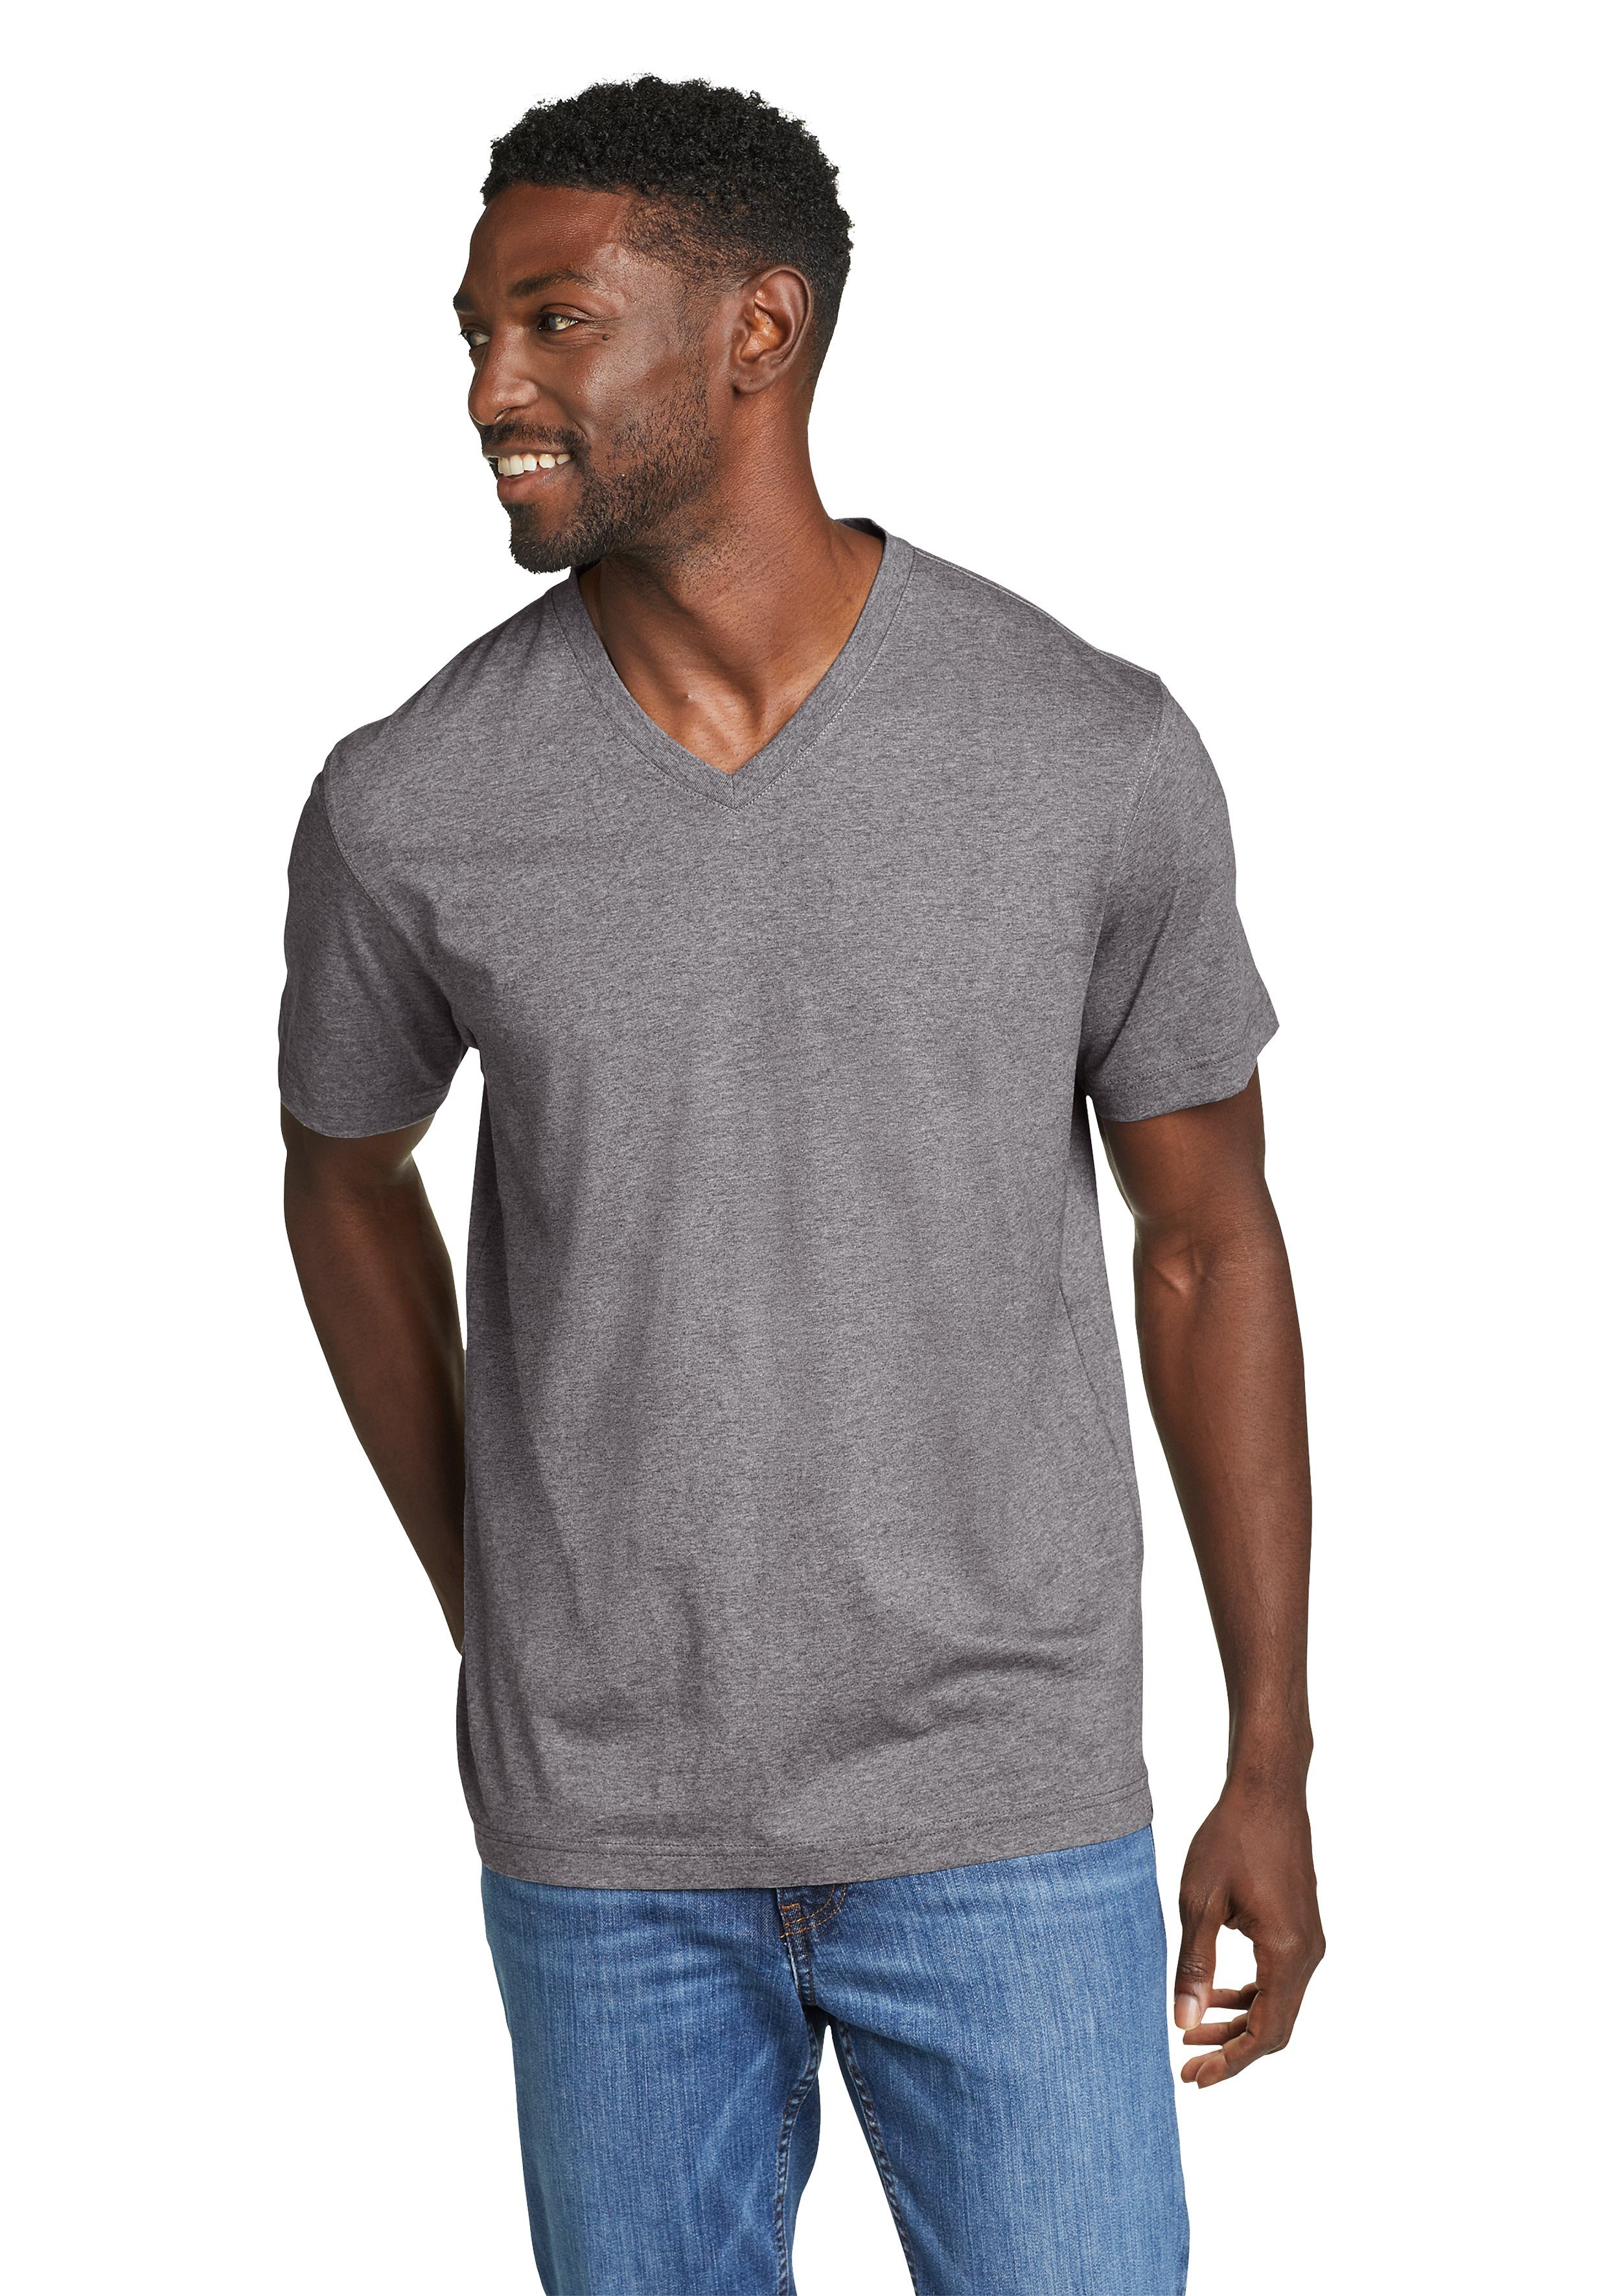 Meliertes - Pro Shirt Grau V-Ausschnitt Baumwolle Legend T-Shirt 100% Wash Bauer Eddie